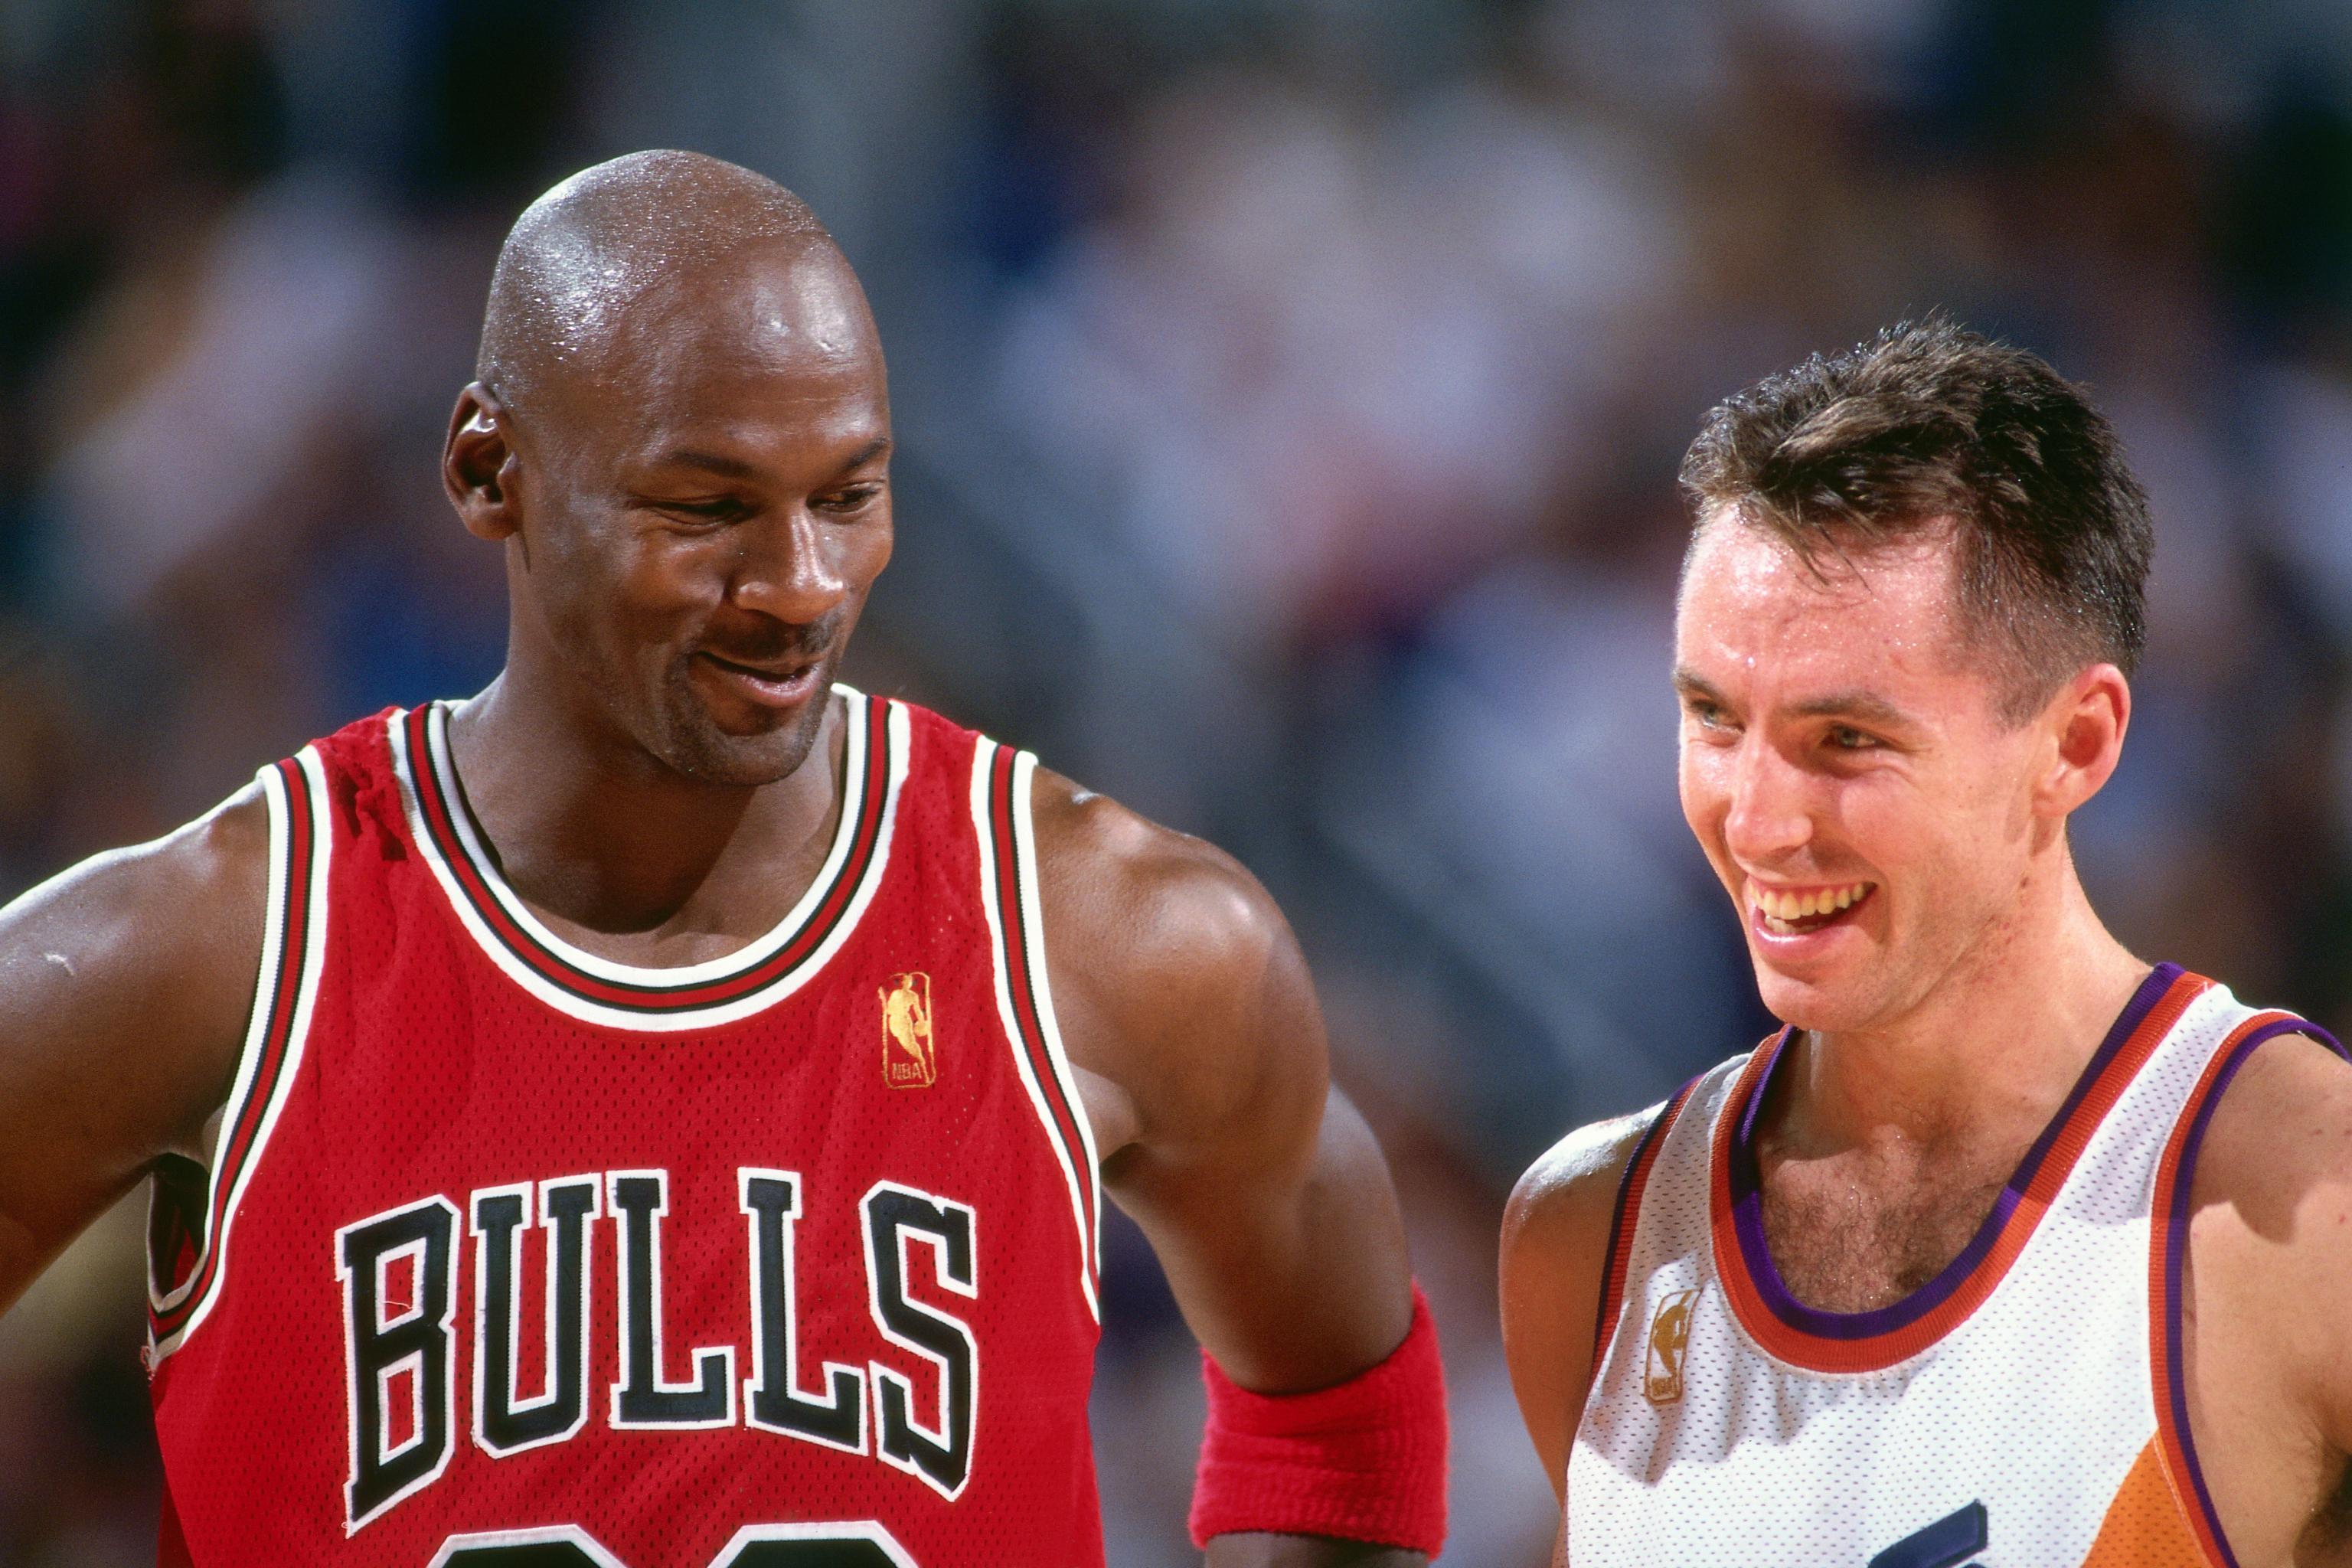 Steve Nash remembers asking Michael Jordan for his sneakers during a game  in 1996